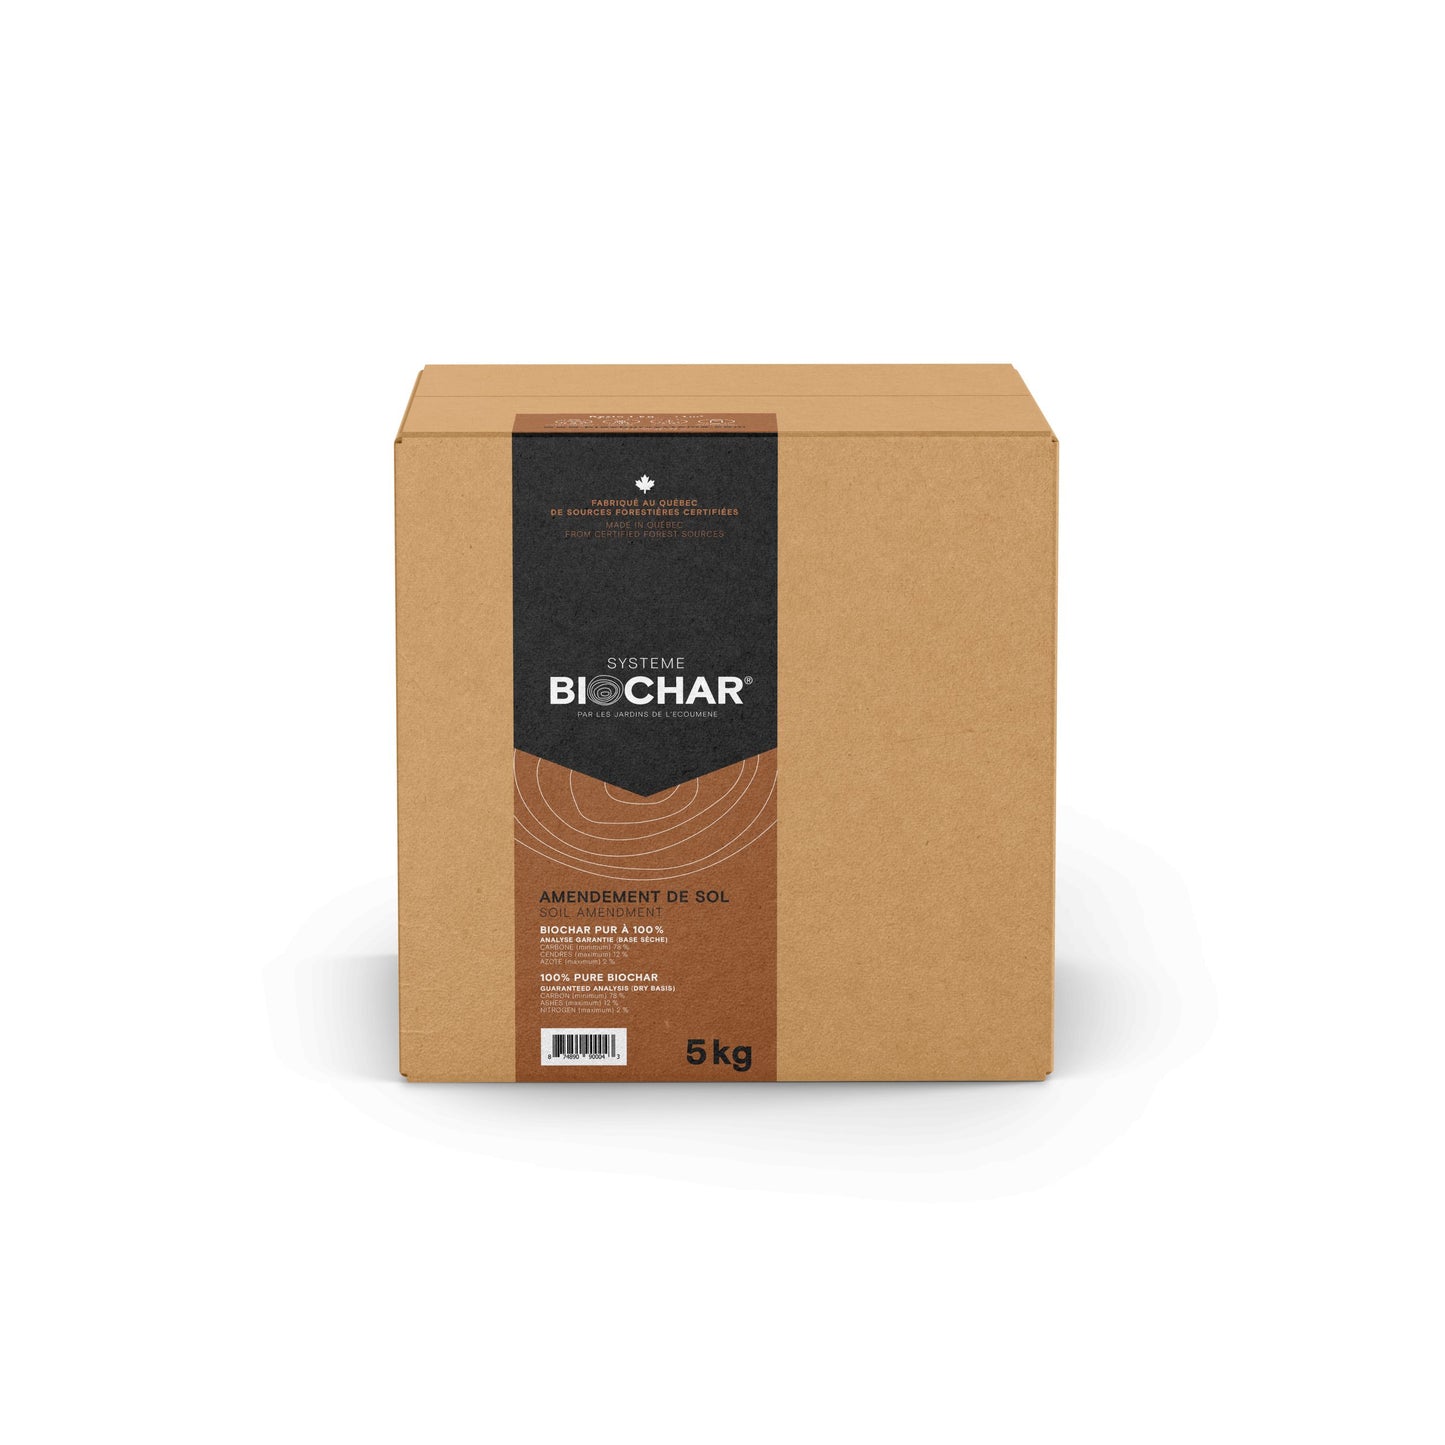 Boîte en carton carrée de 5kg de Biochar.